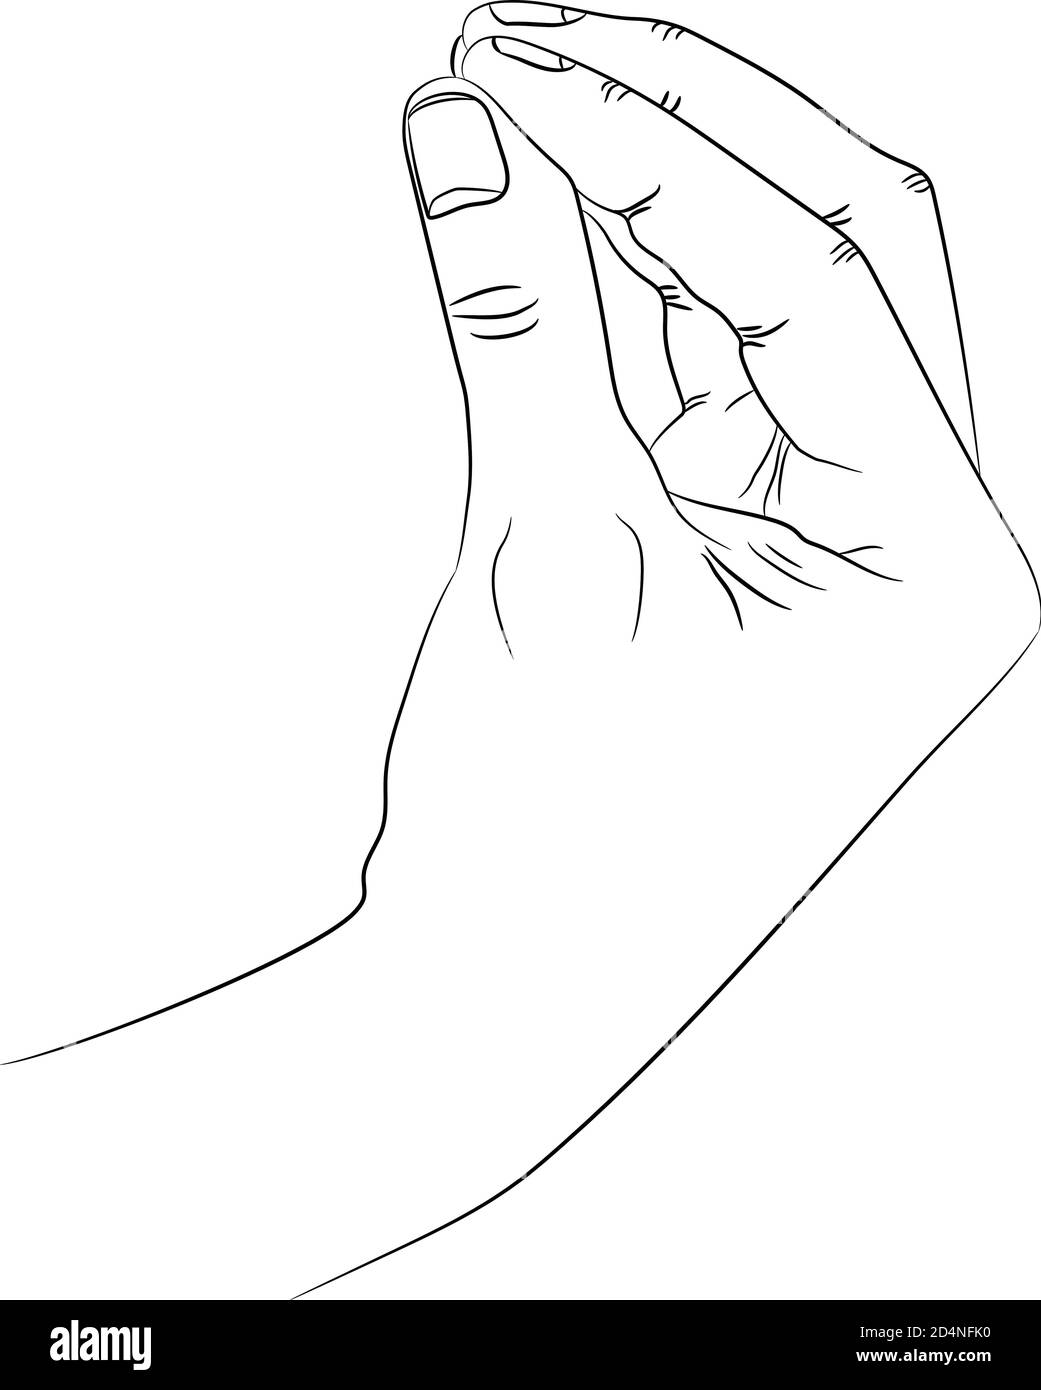 Isolierte Silhouette der Hand, die italienische Geste von wtf zeigt oder  was willst du von mir Stock-Vektorgrafik - Alamy